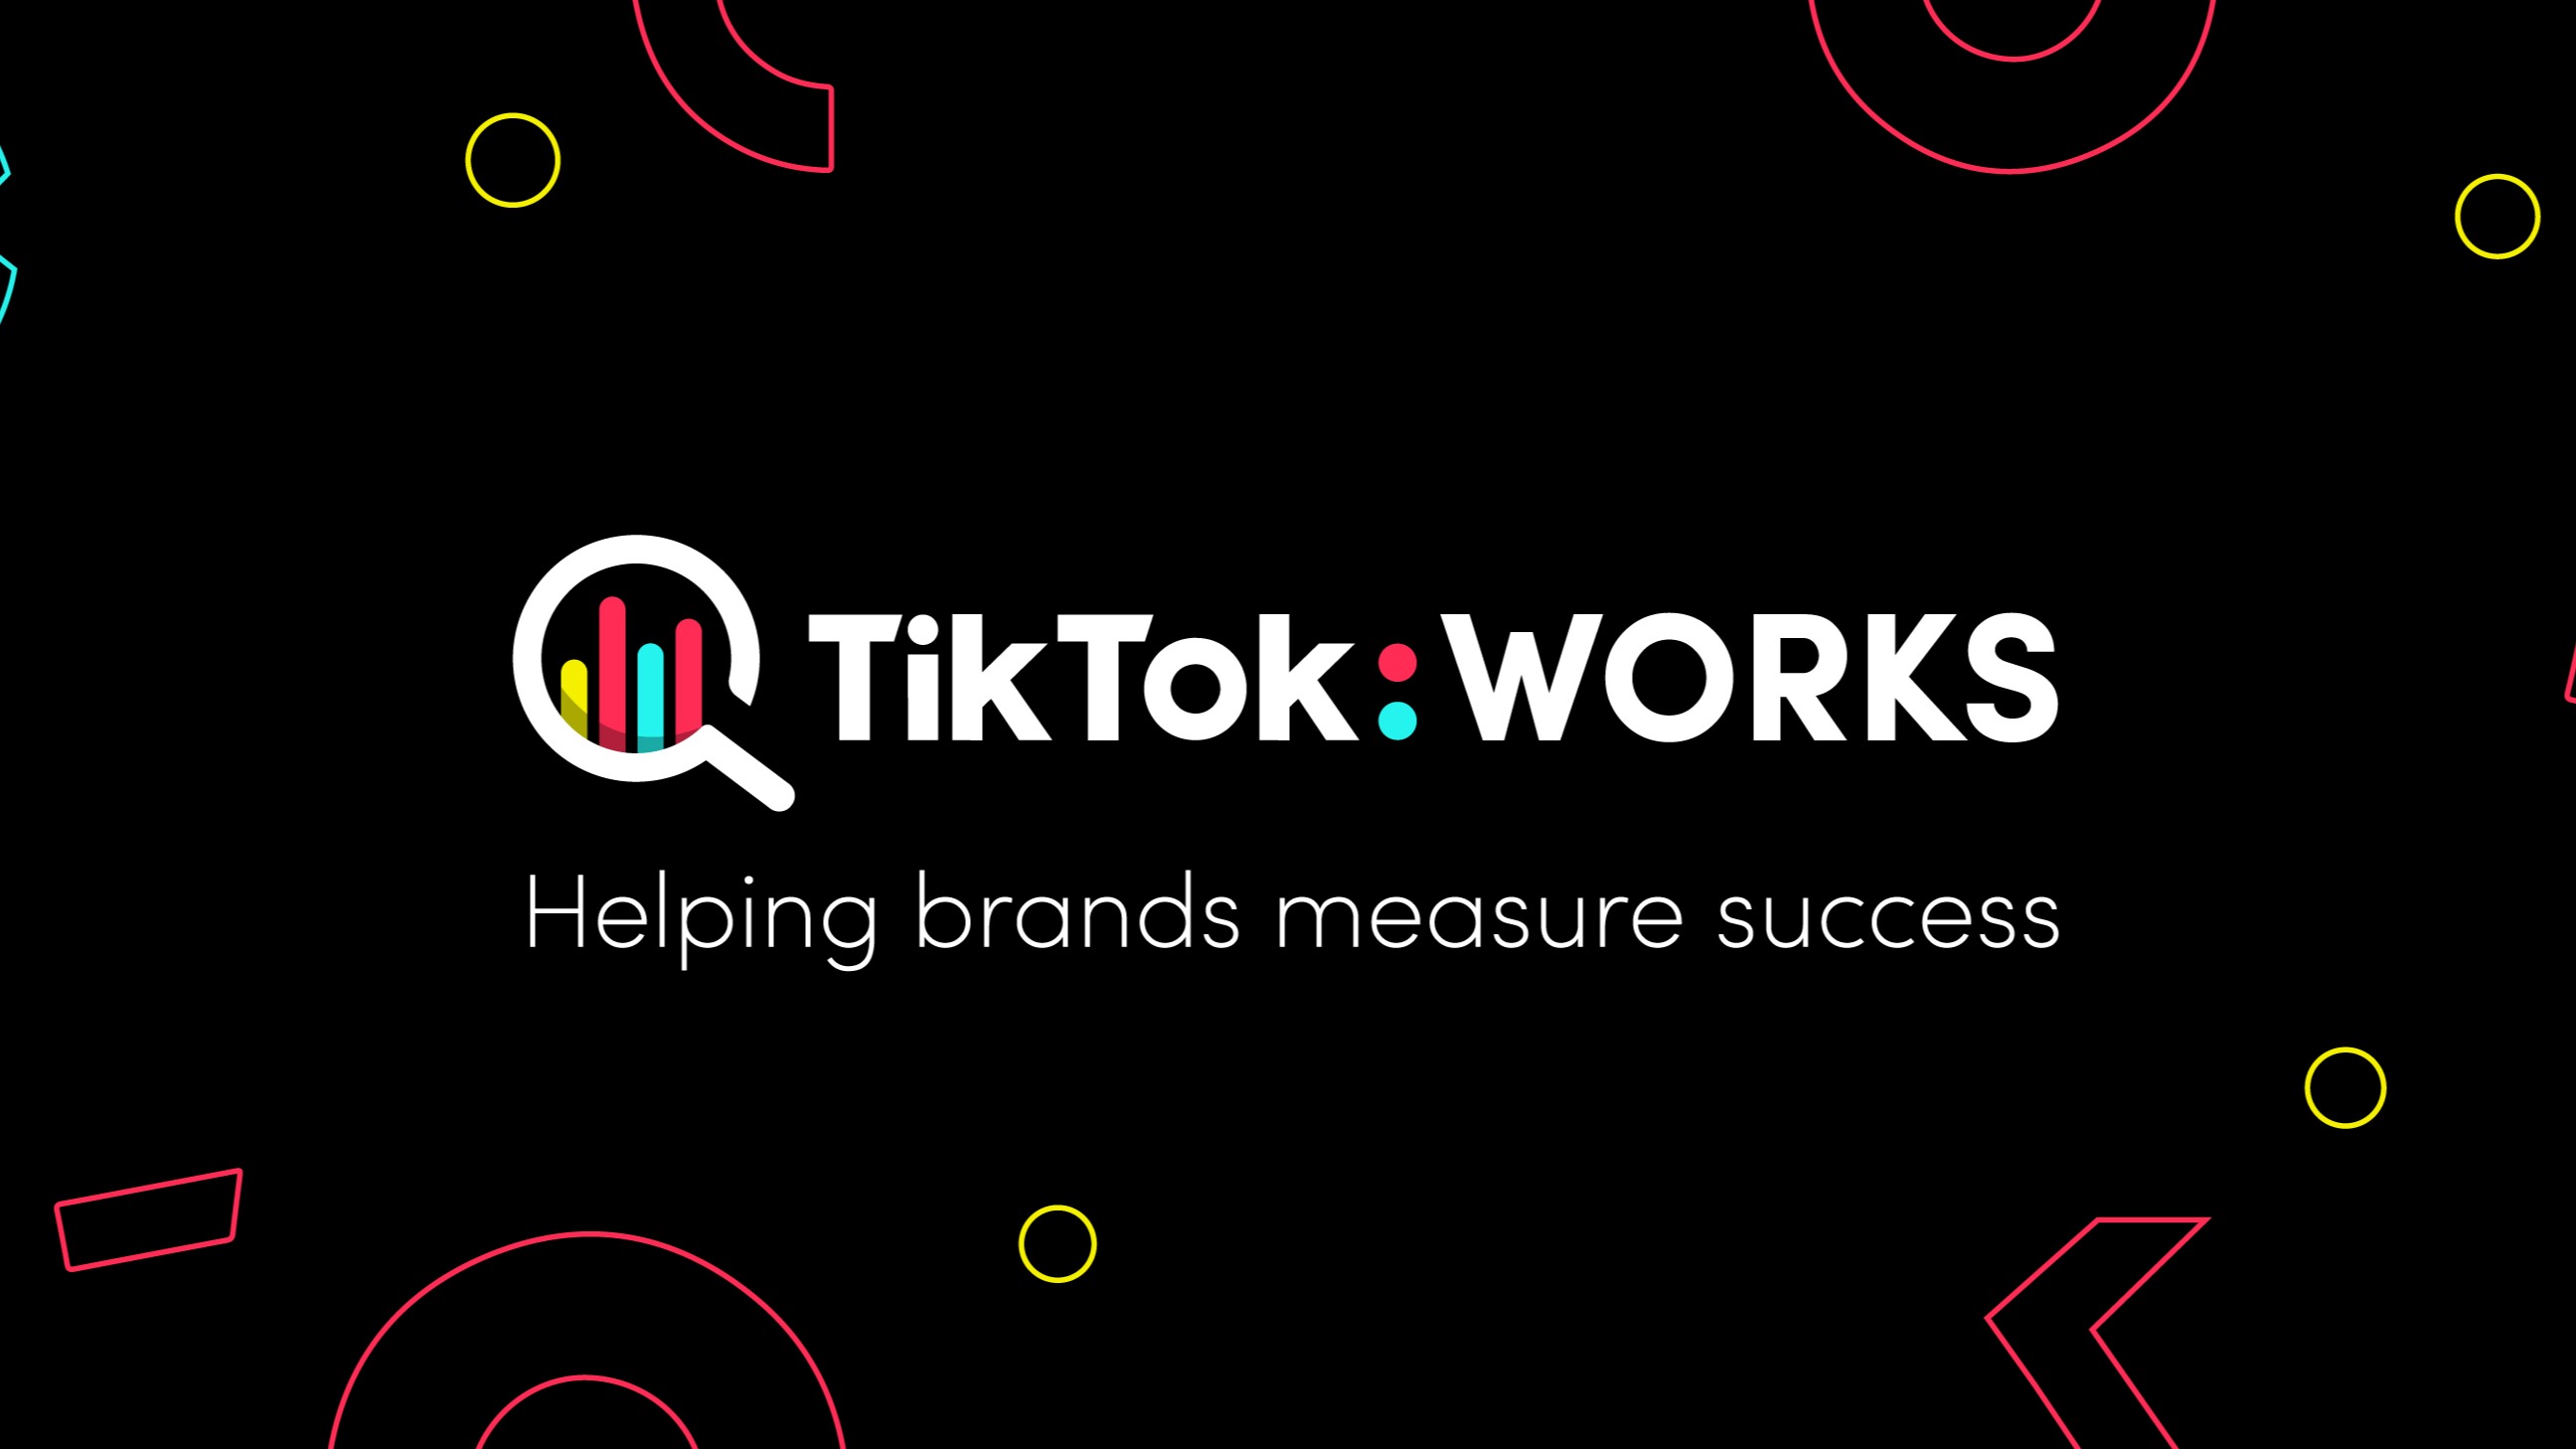 TikTok Works KV Black 980x350 Hi-res